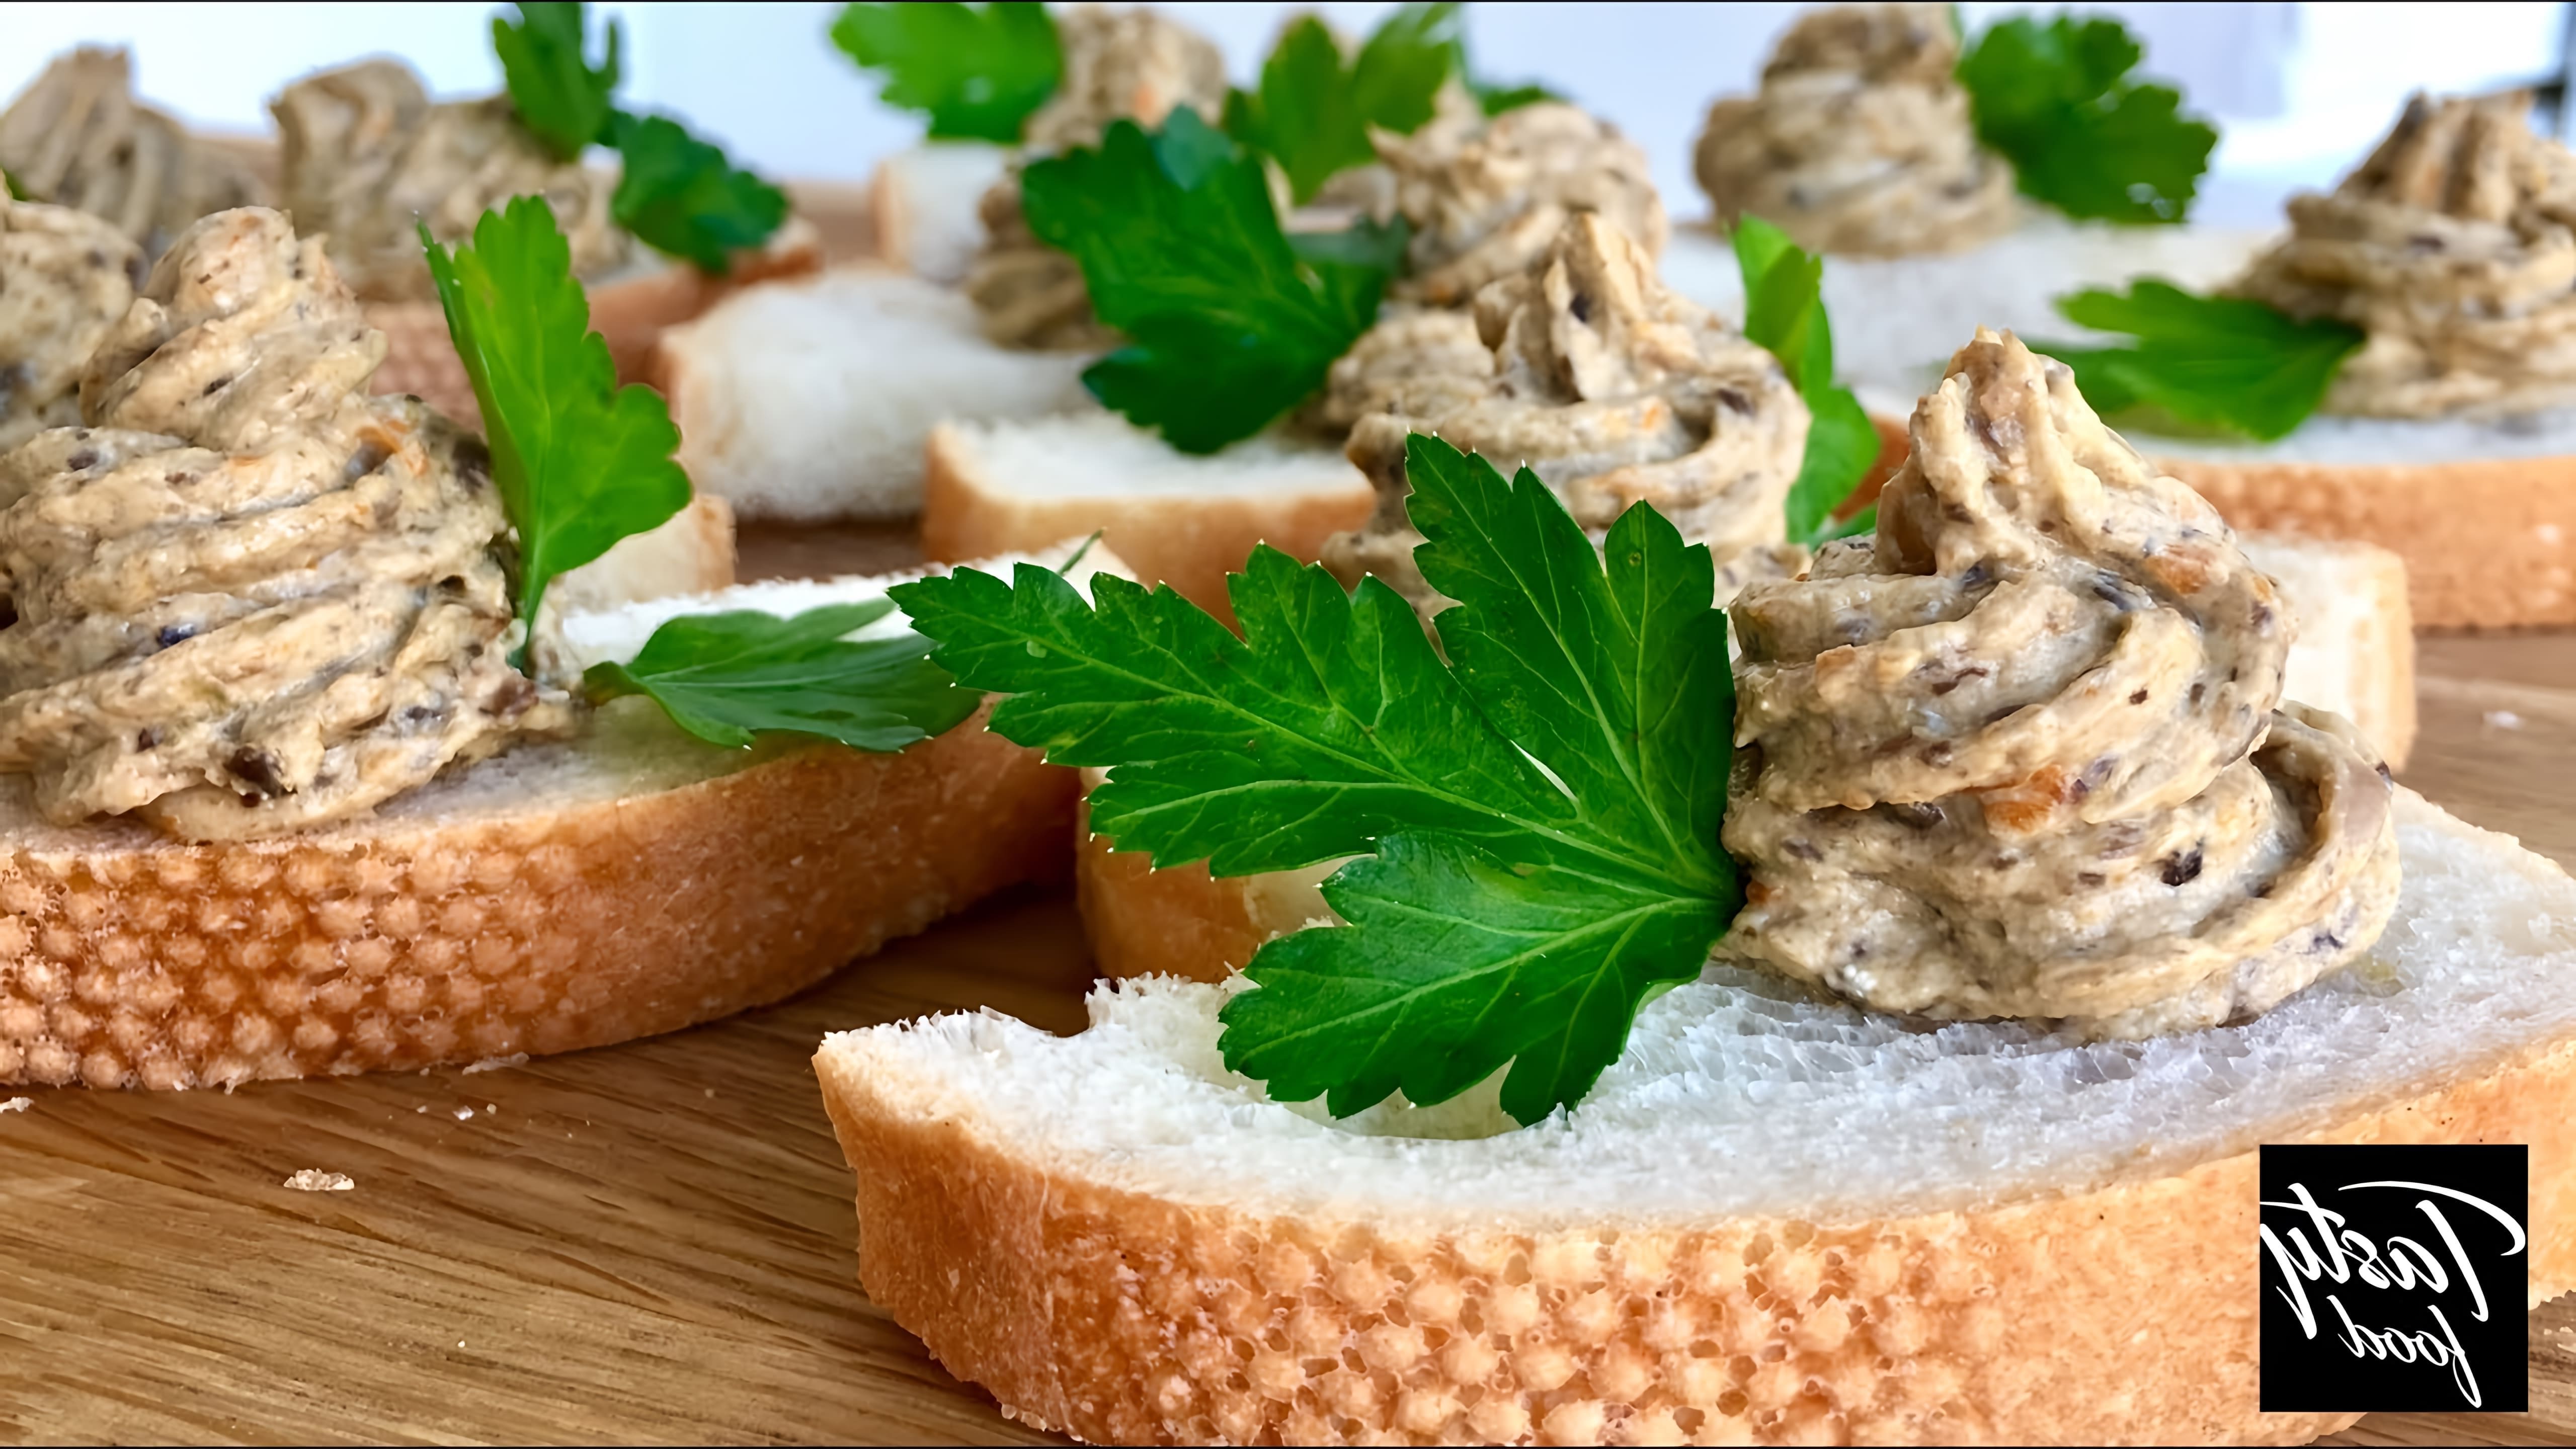 В этом видео демонстрируется рецепт приготовления грибного паштета на багете